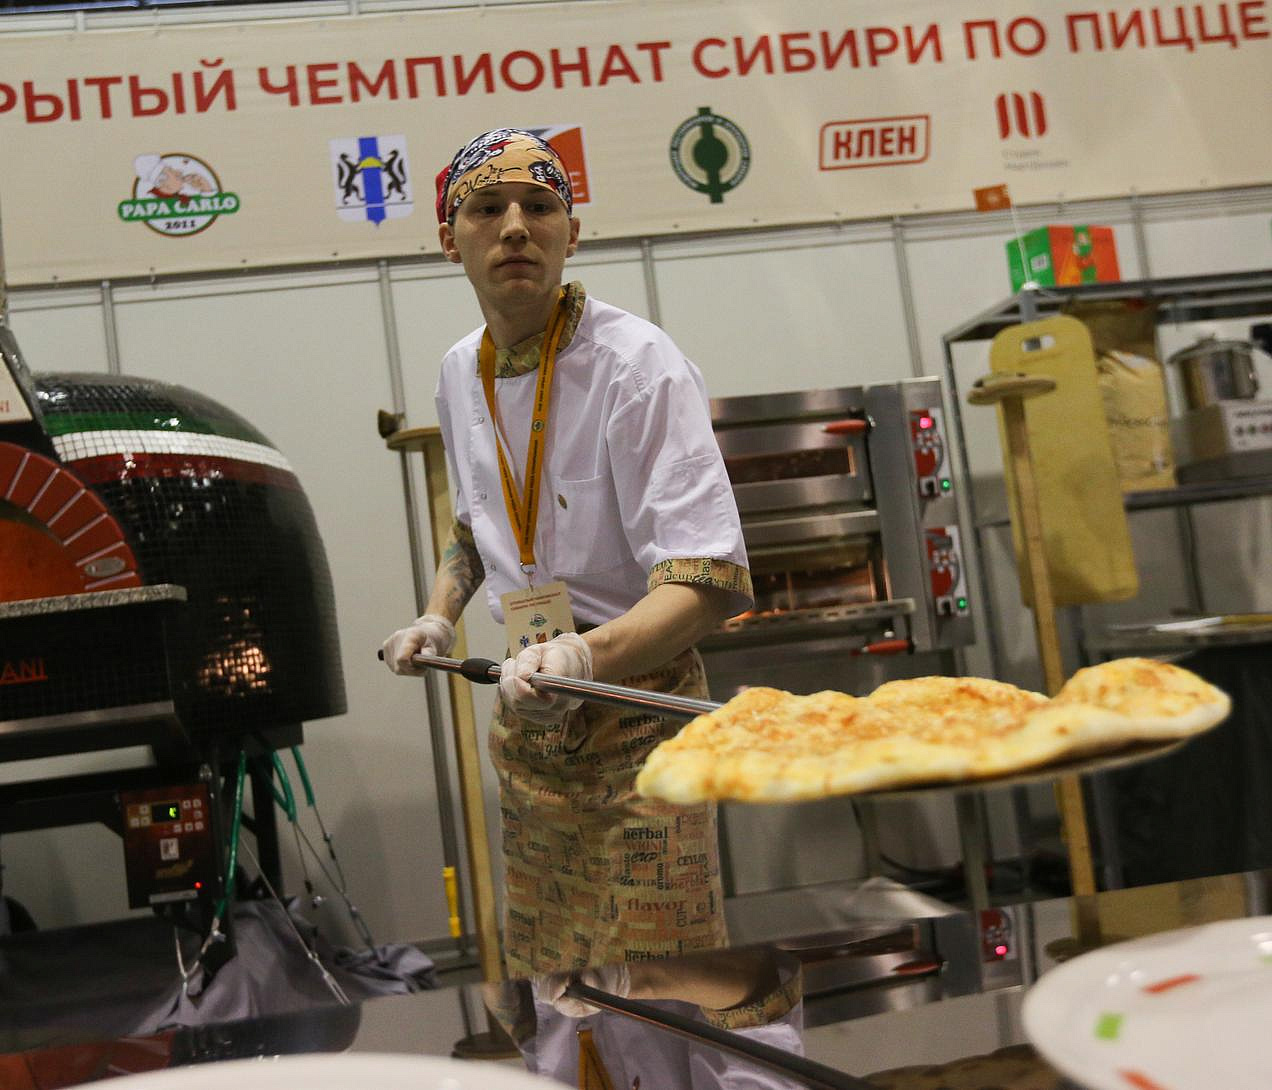 В Новосибирске в четыре раза выросло число вакансий для пиццемейкеров